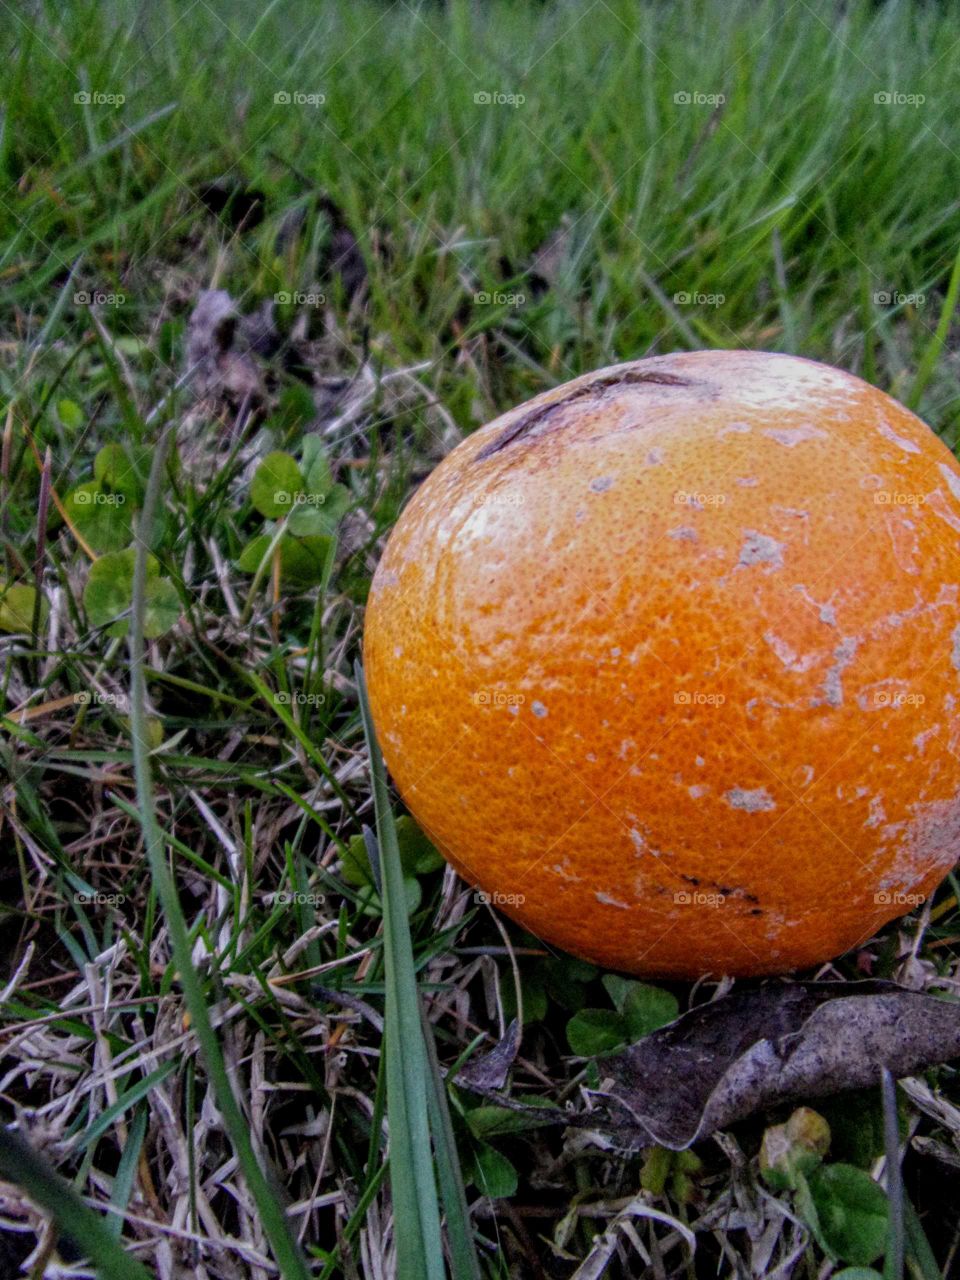 Discarded orange